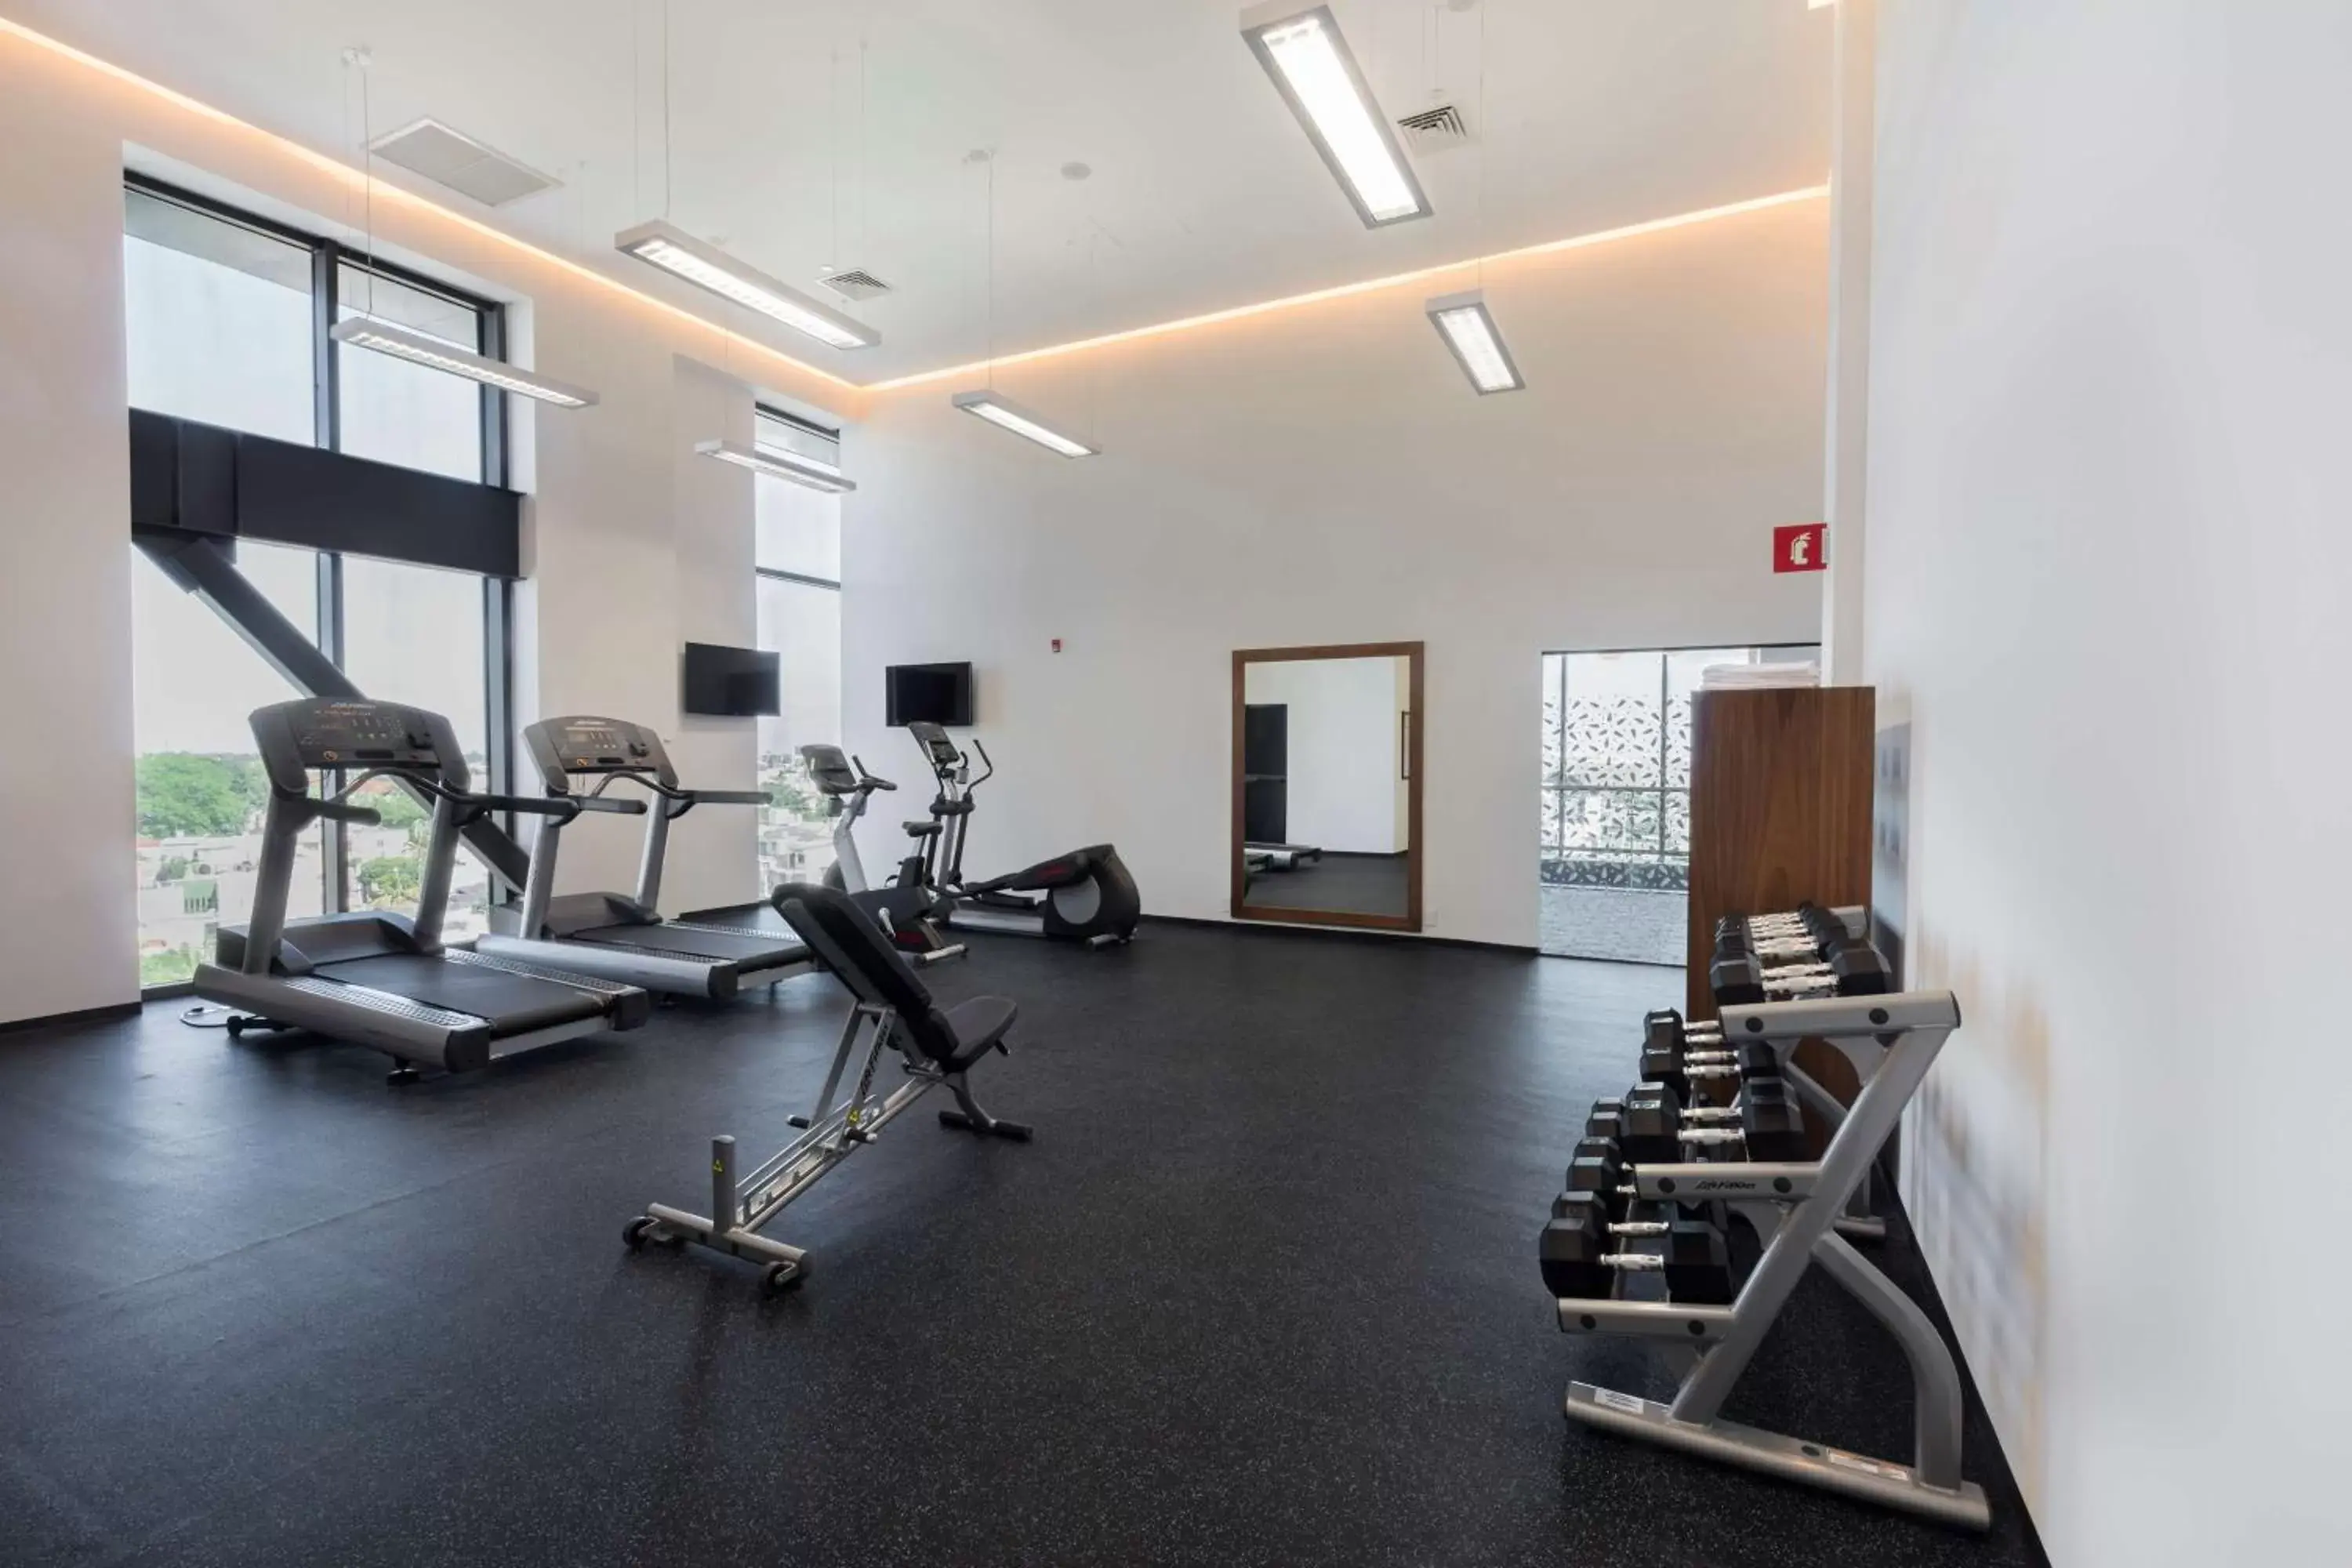 Fitness centre/facilities, Fitness Center/Facilities in Hilton Garden Inn Merida